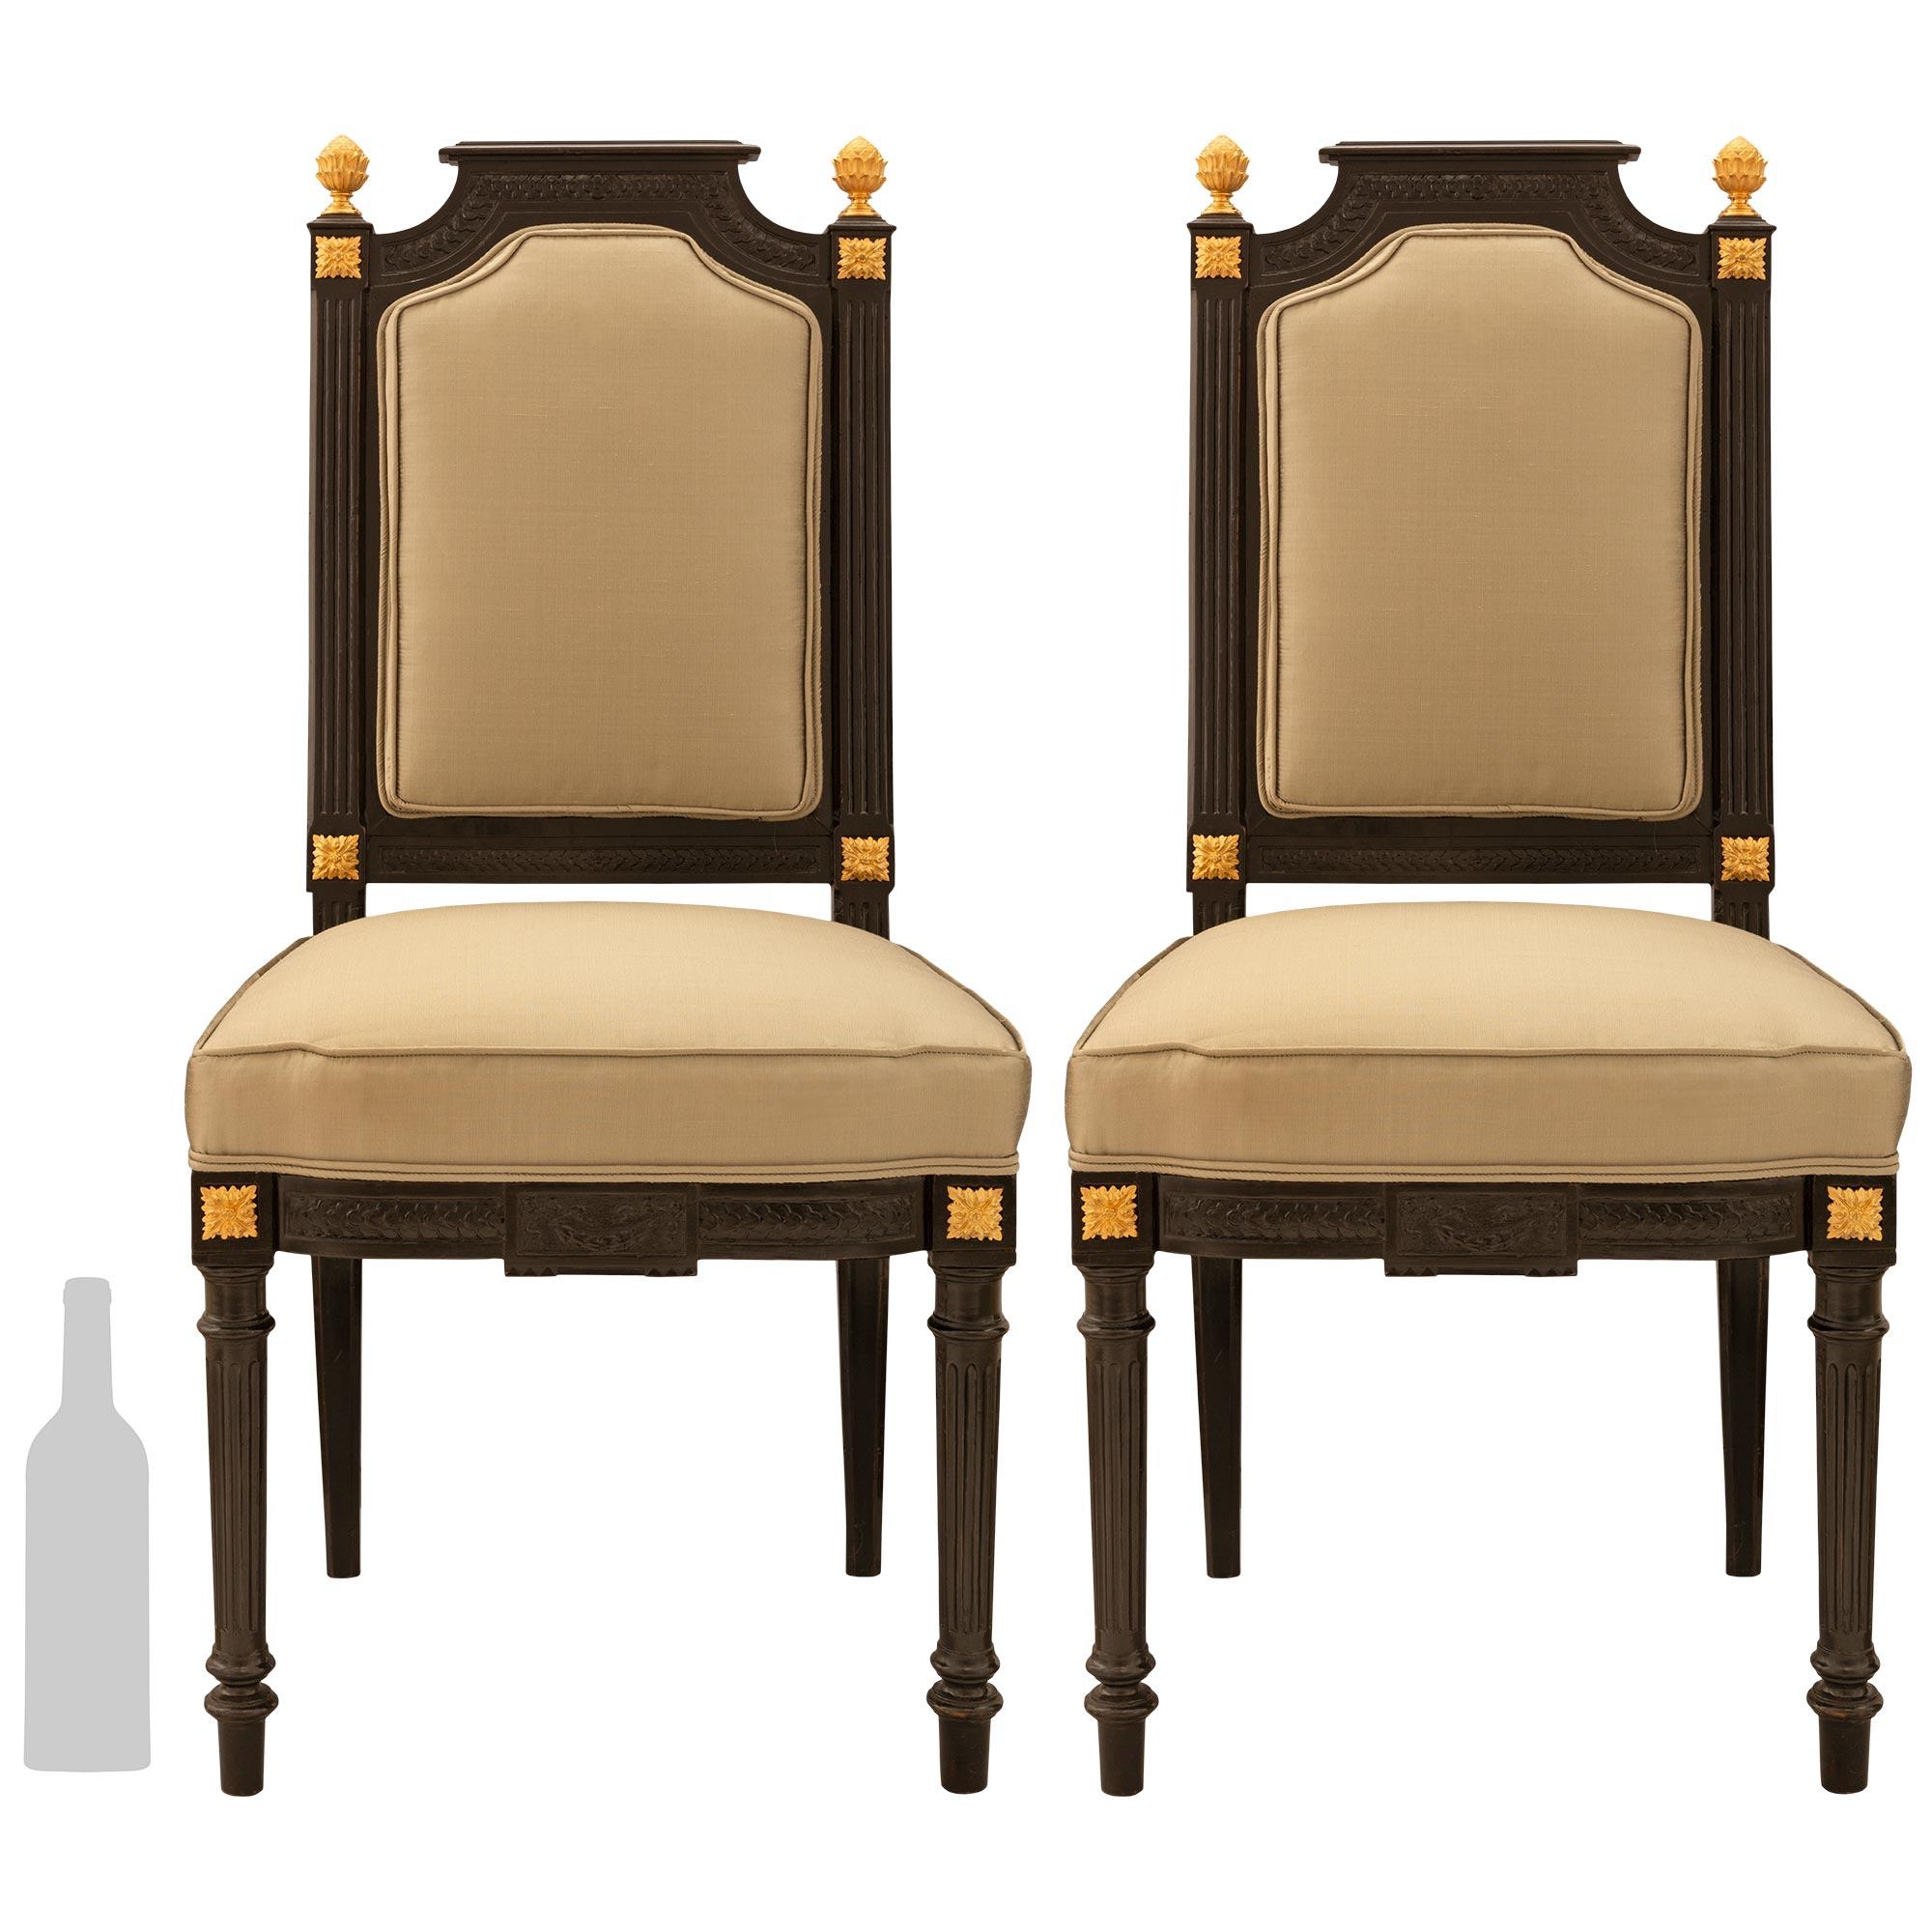 Ein auffälliges und hübsches Paar französischer Beistellstühle aus Ebenholz und Ormolu aus der Zeit Napoleons III. des 19. Jahrhunderts mit ungewöhnlich breiten Sitzen. Jeder Stuhl steht auf vier runden, konisch zulaufenden, kannelierten Beinen